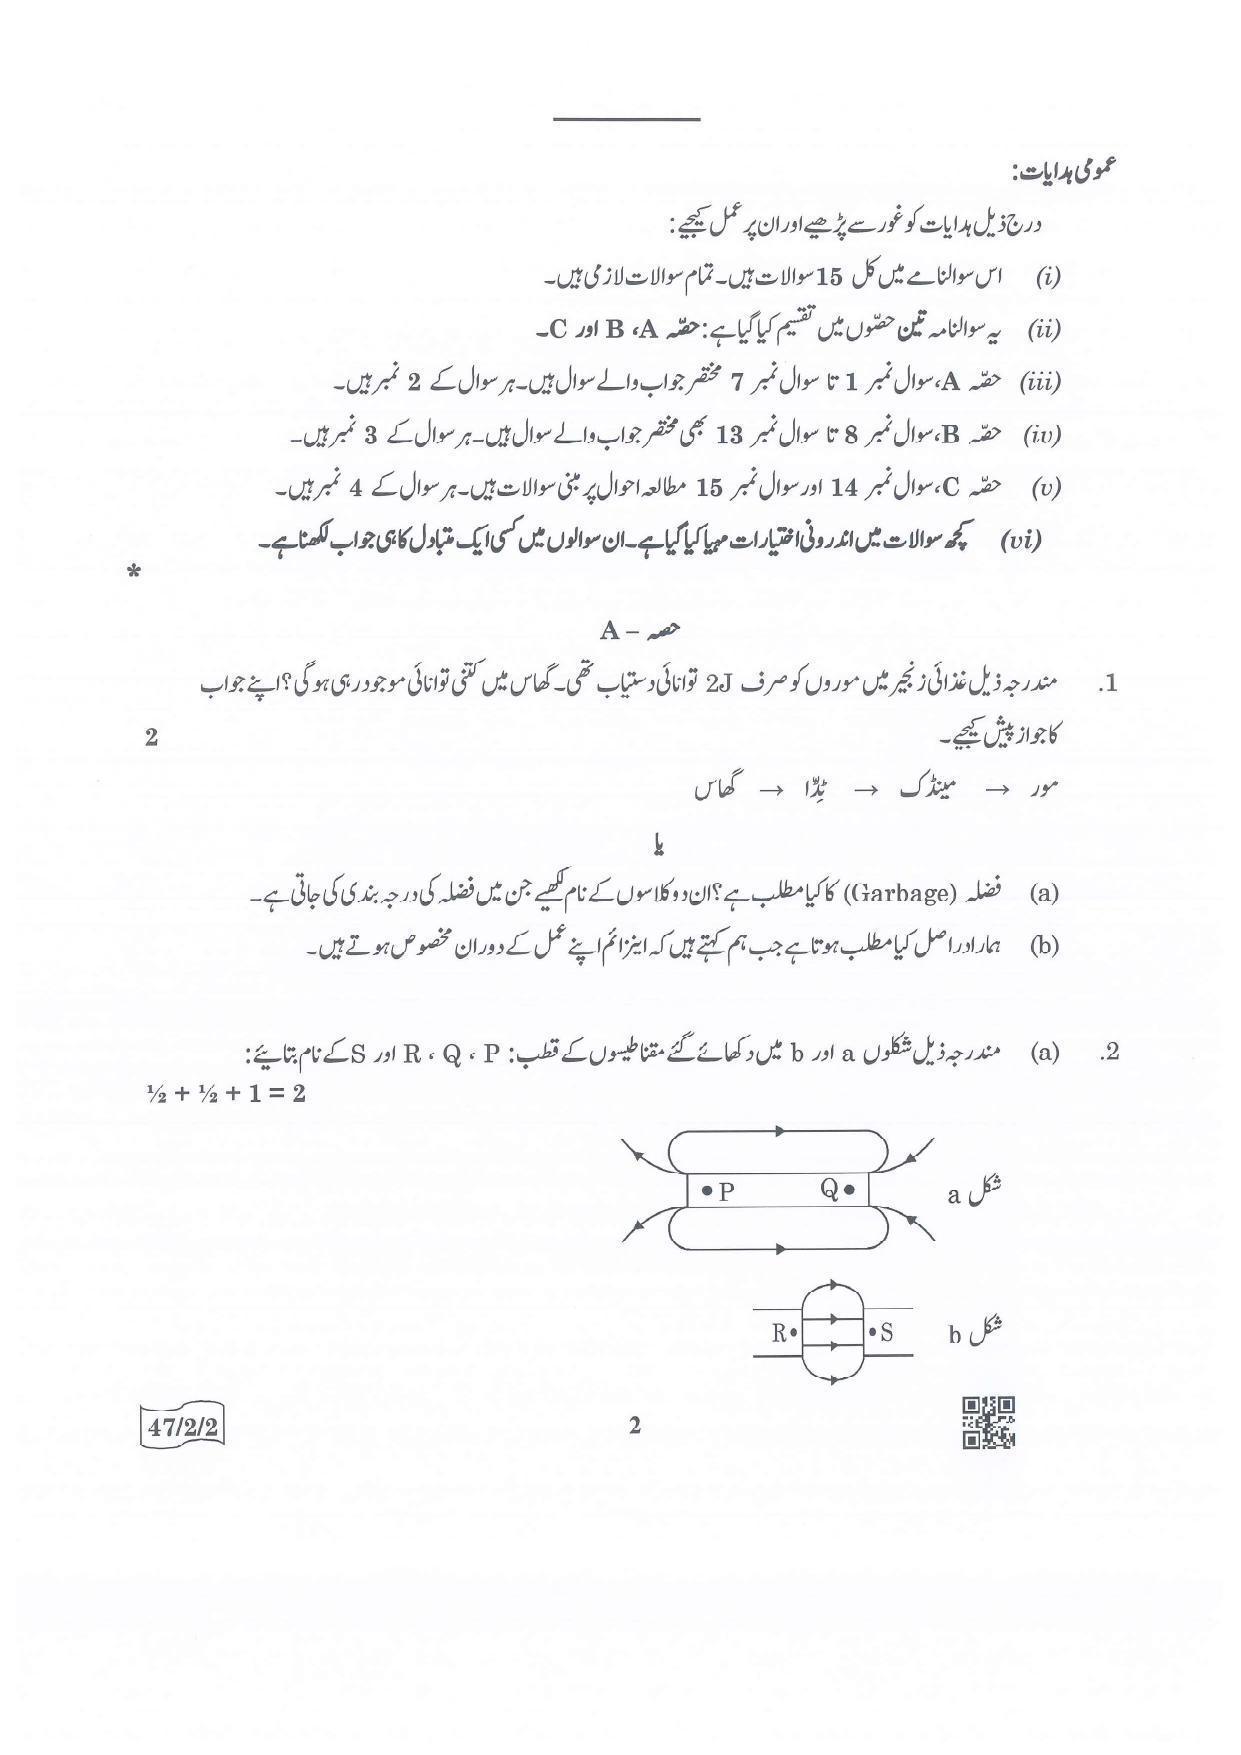 CBSE Class 10 47-2-2 Science Urdu Version.pdf 1 2022 Question Paper - Page 2